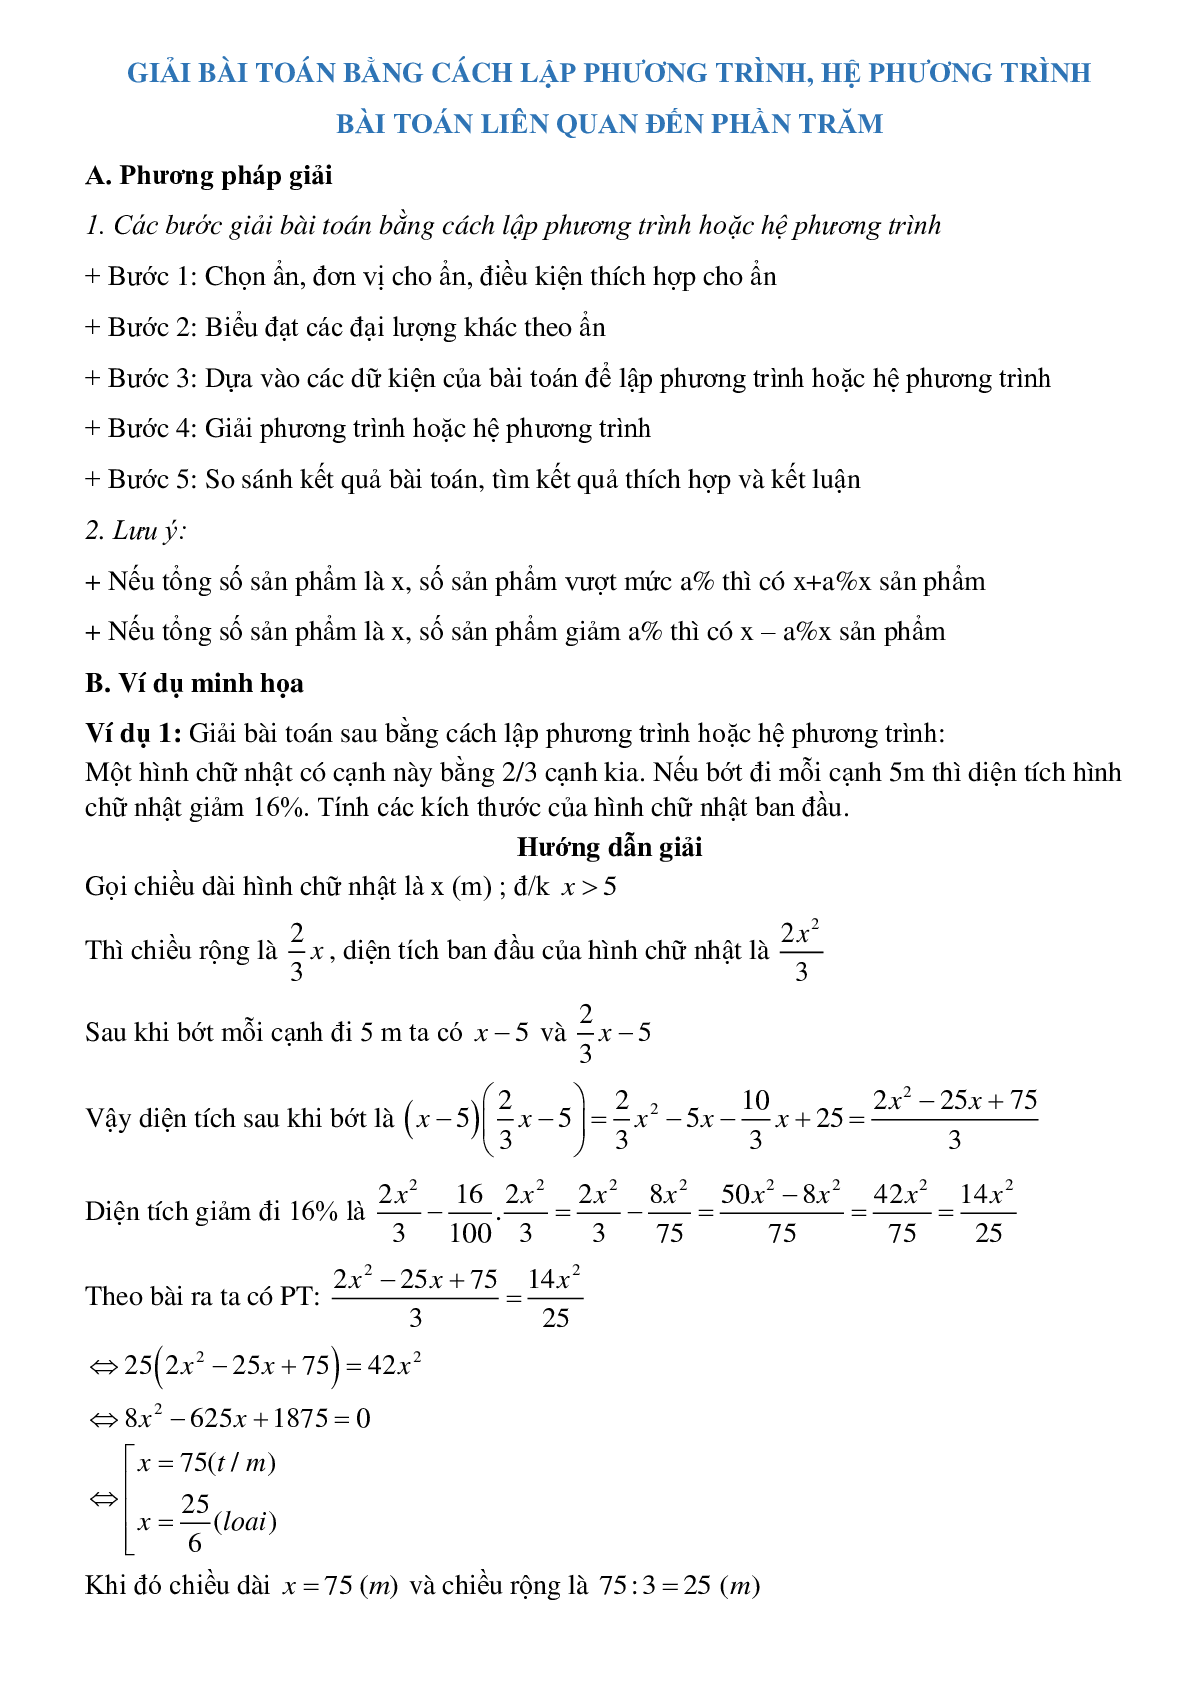 Giải bài toán bằng cách lập phương trình, hệ phương trình - Bài toán phần trăm (trang 1)